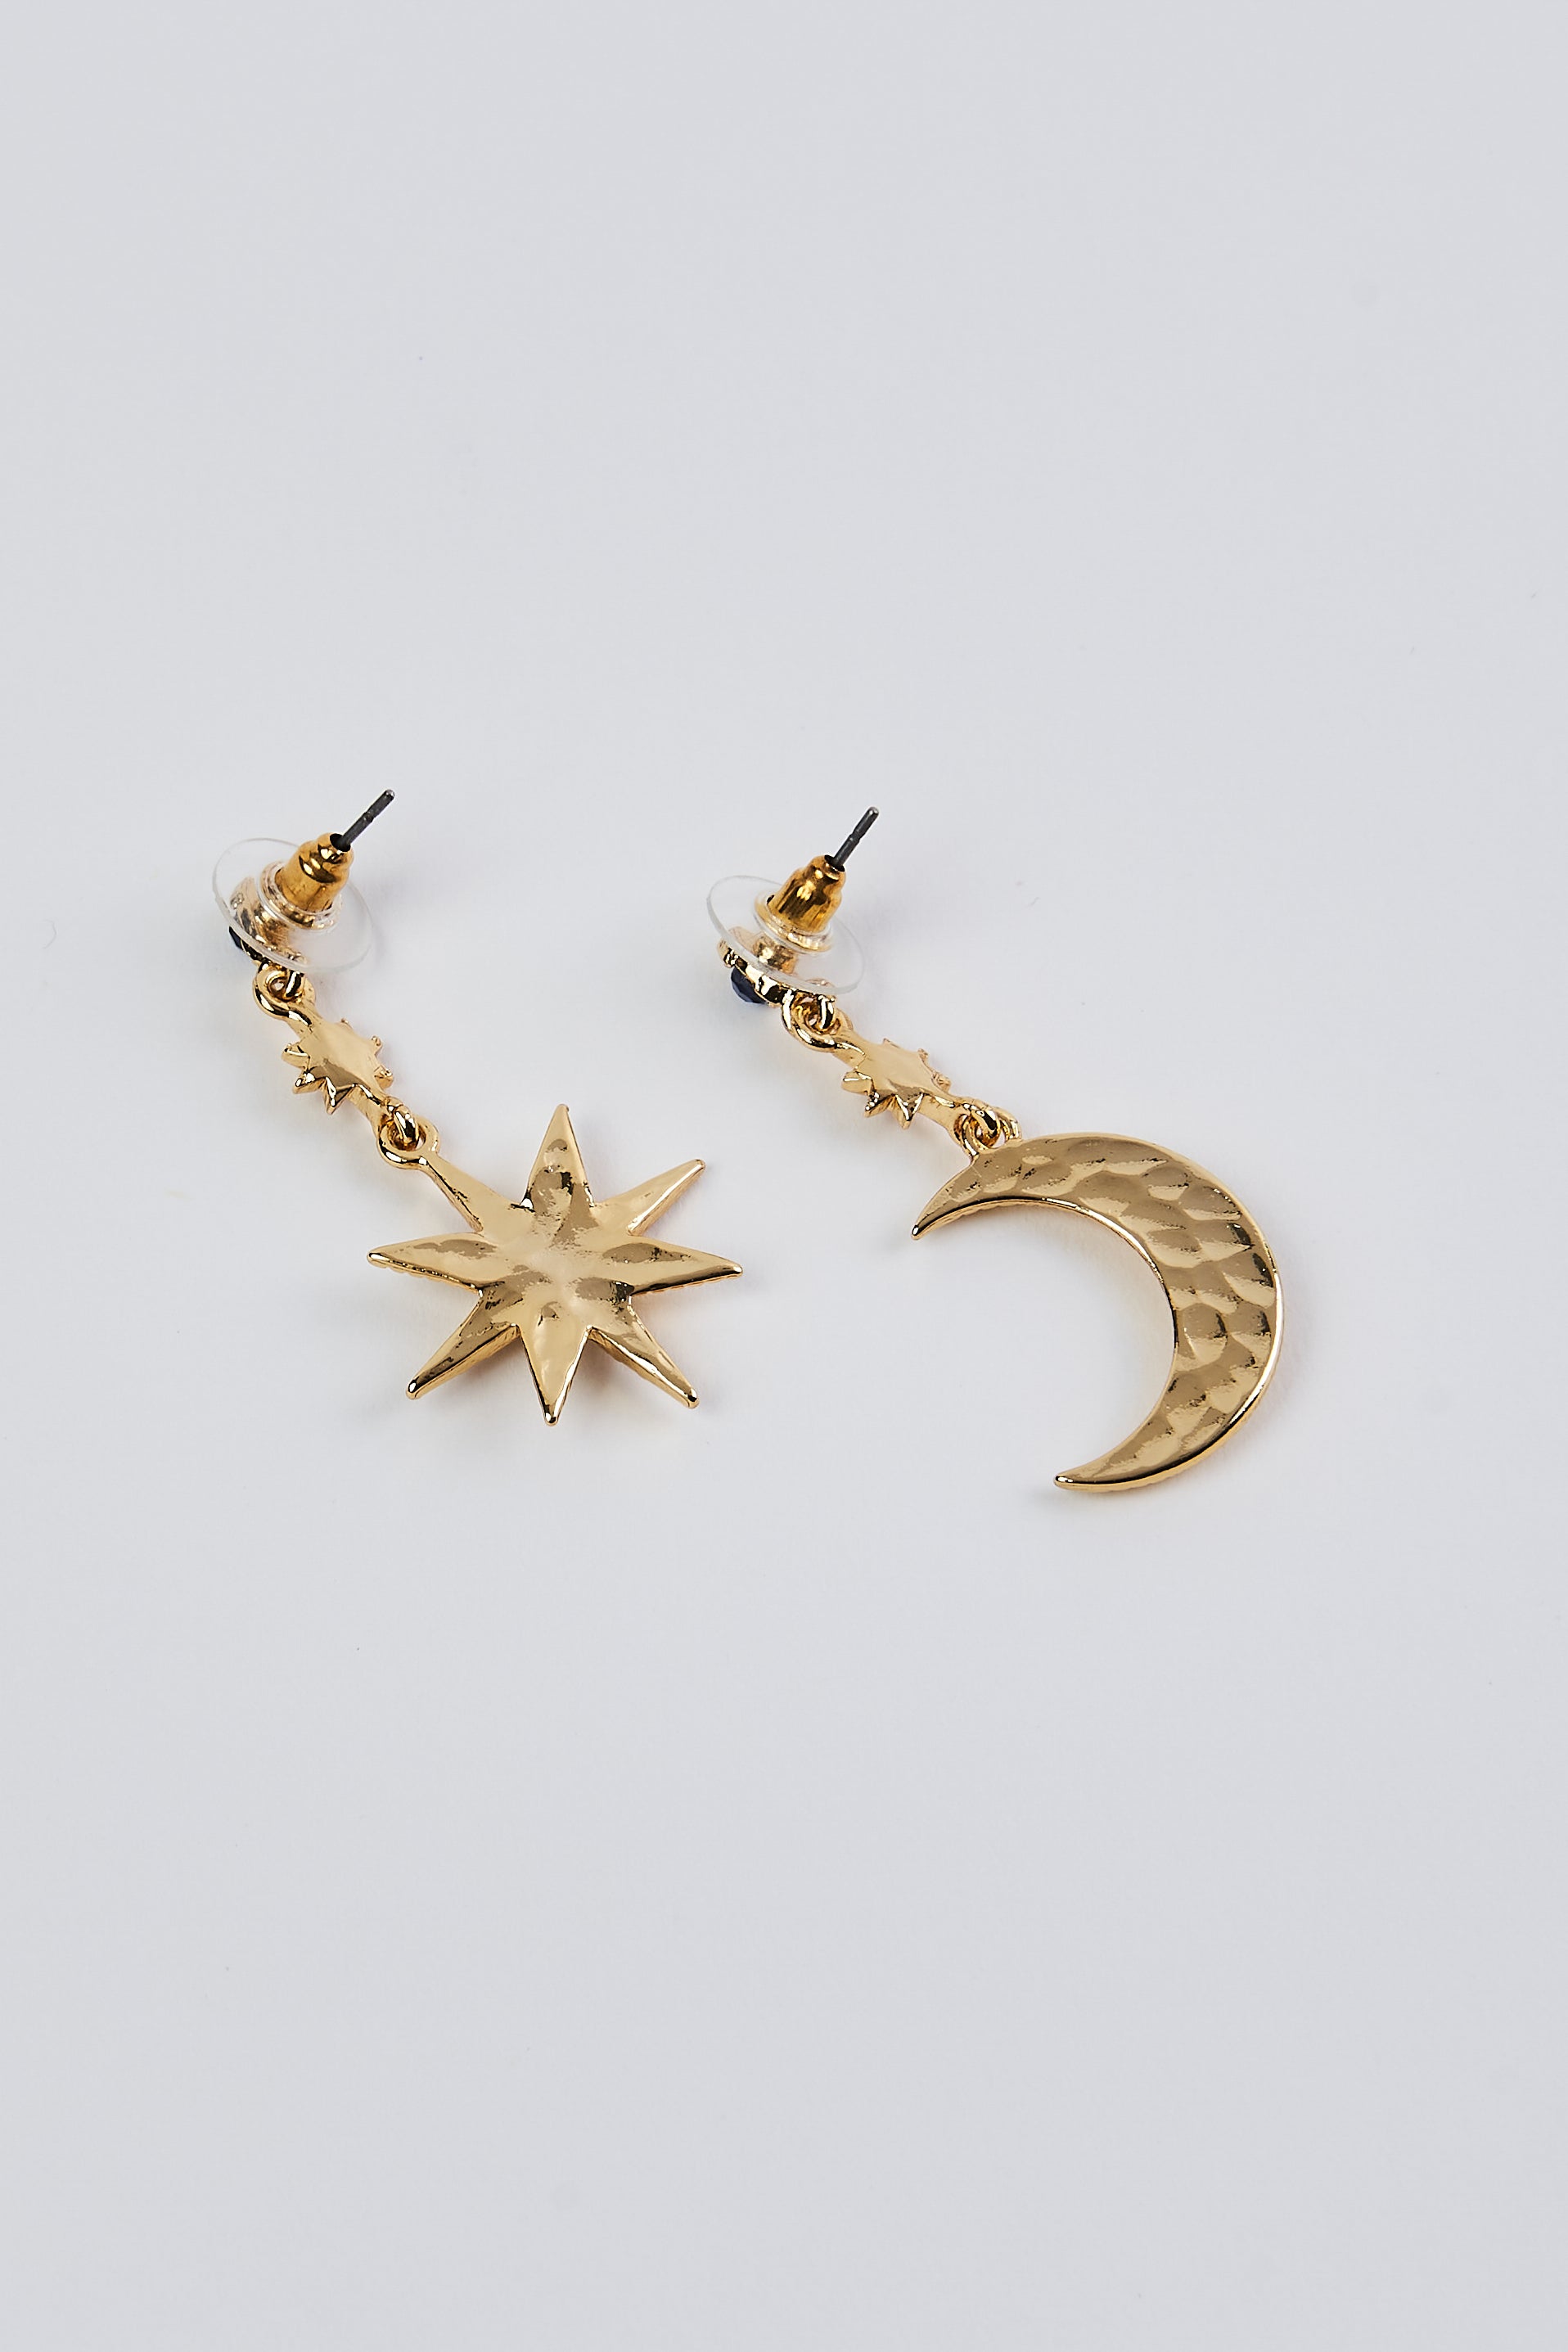 Moon & Star Earrings Star Earrings Moon Earrings Tiny | Etsy earrings gold,  Tiny earrings, Gold earrings models